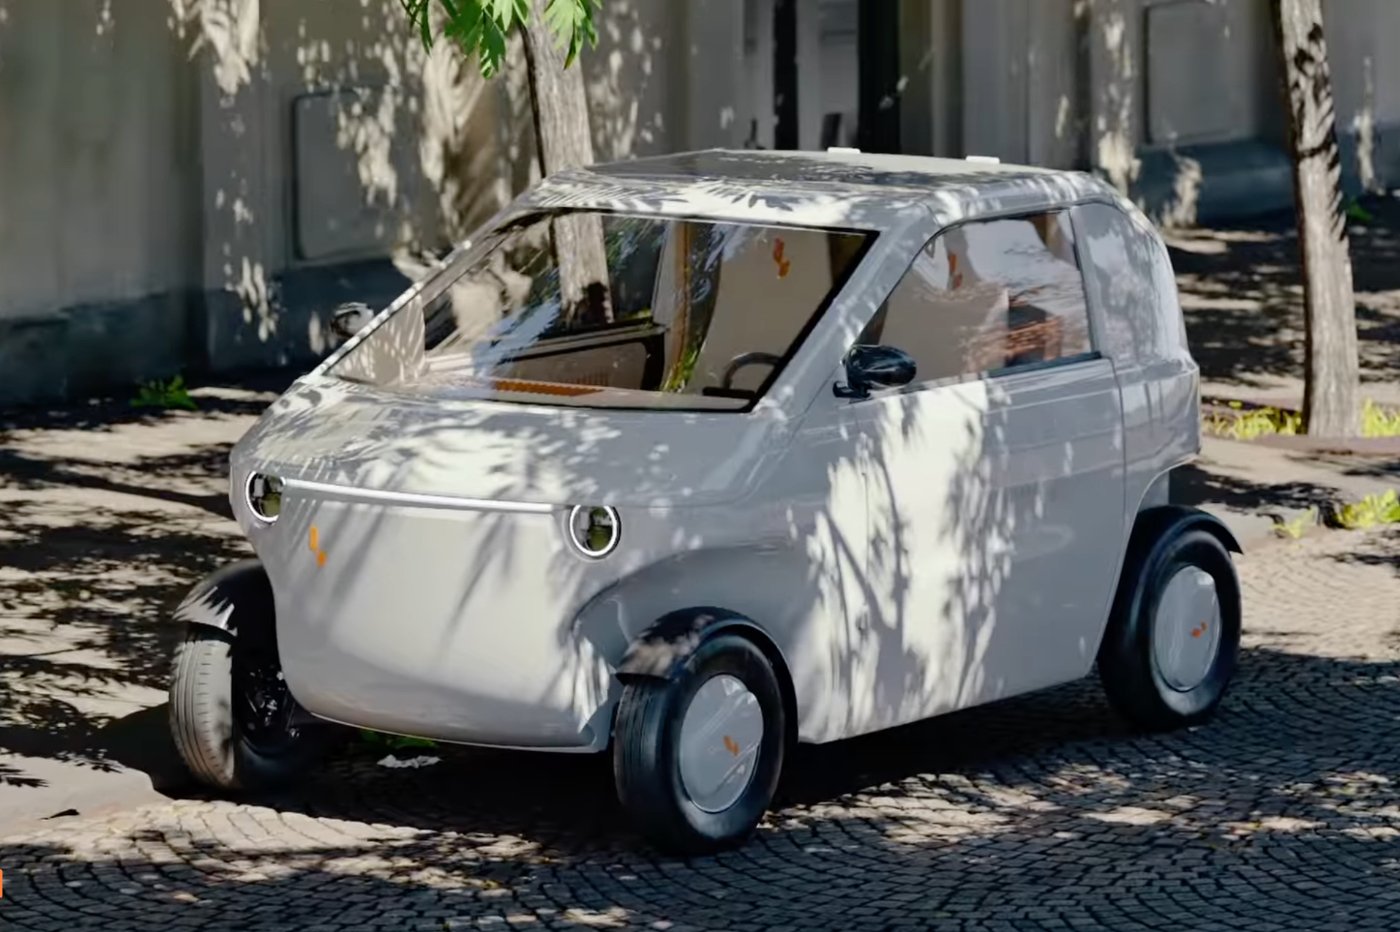 Cette micro-voiture électrique à moins de 12.000 euros est livrée